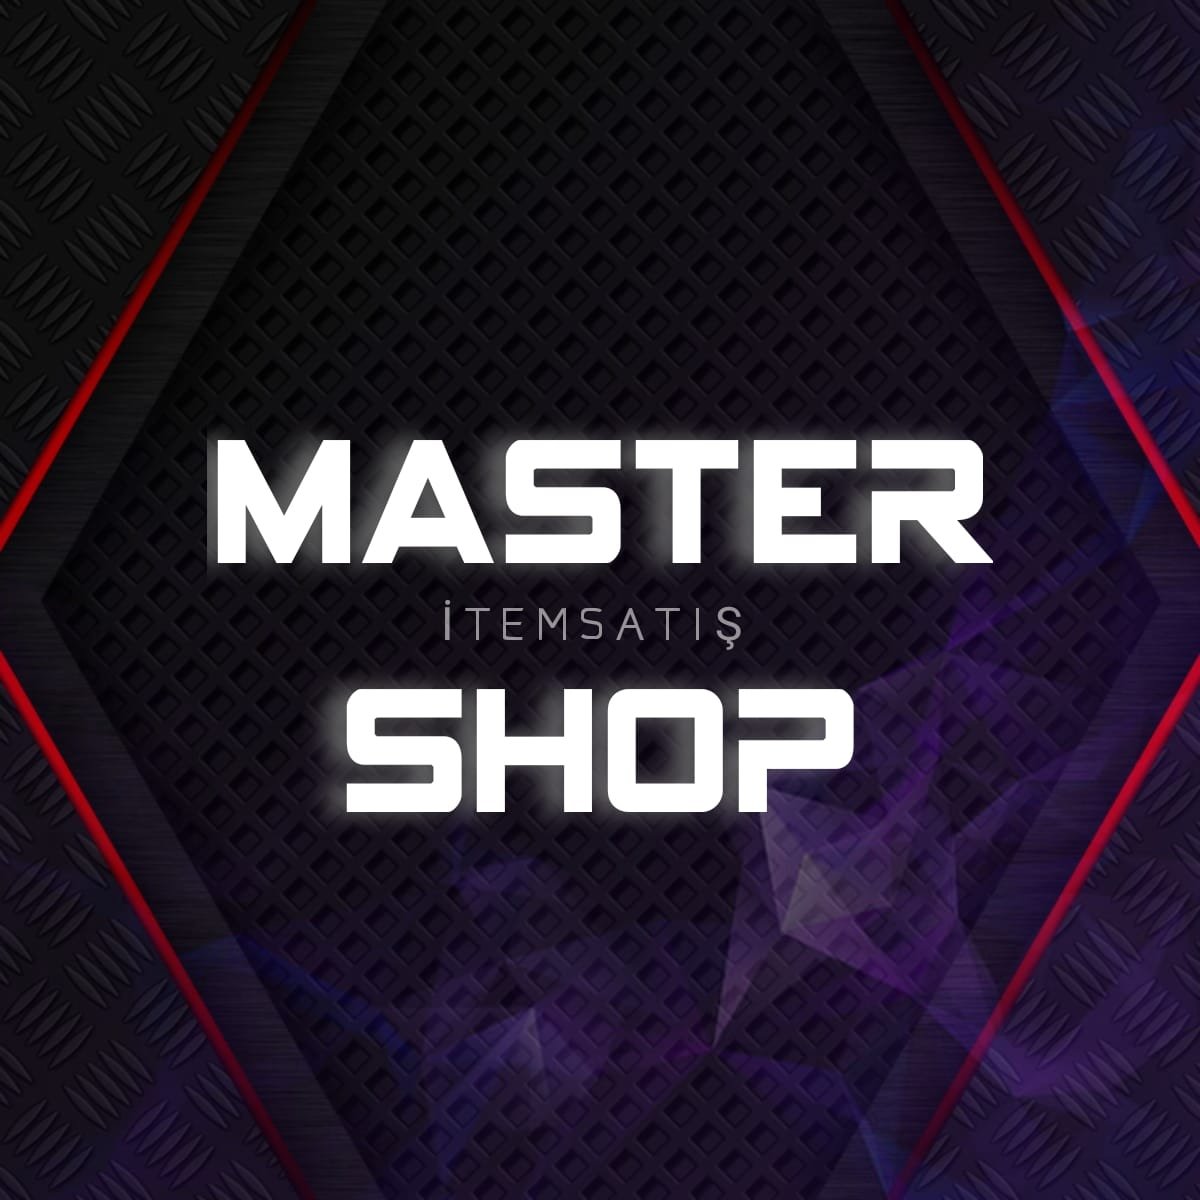 MasterShop